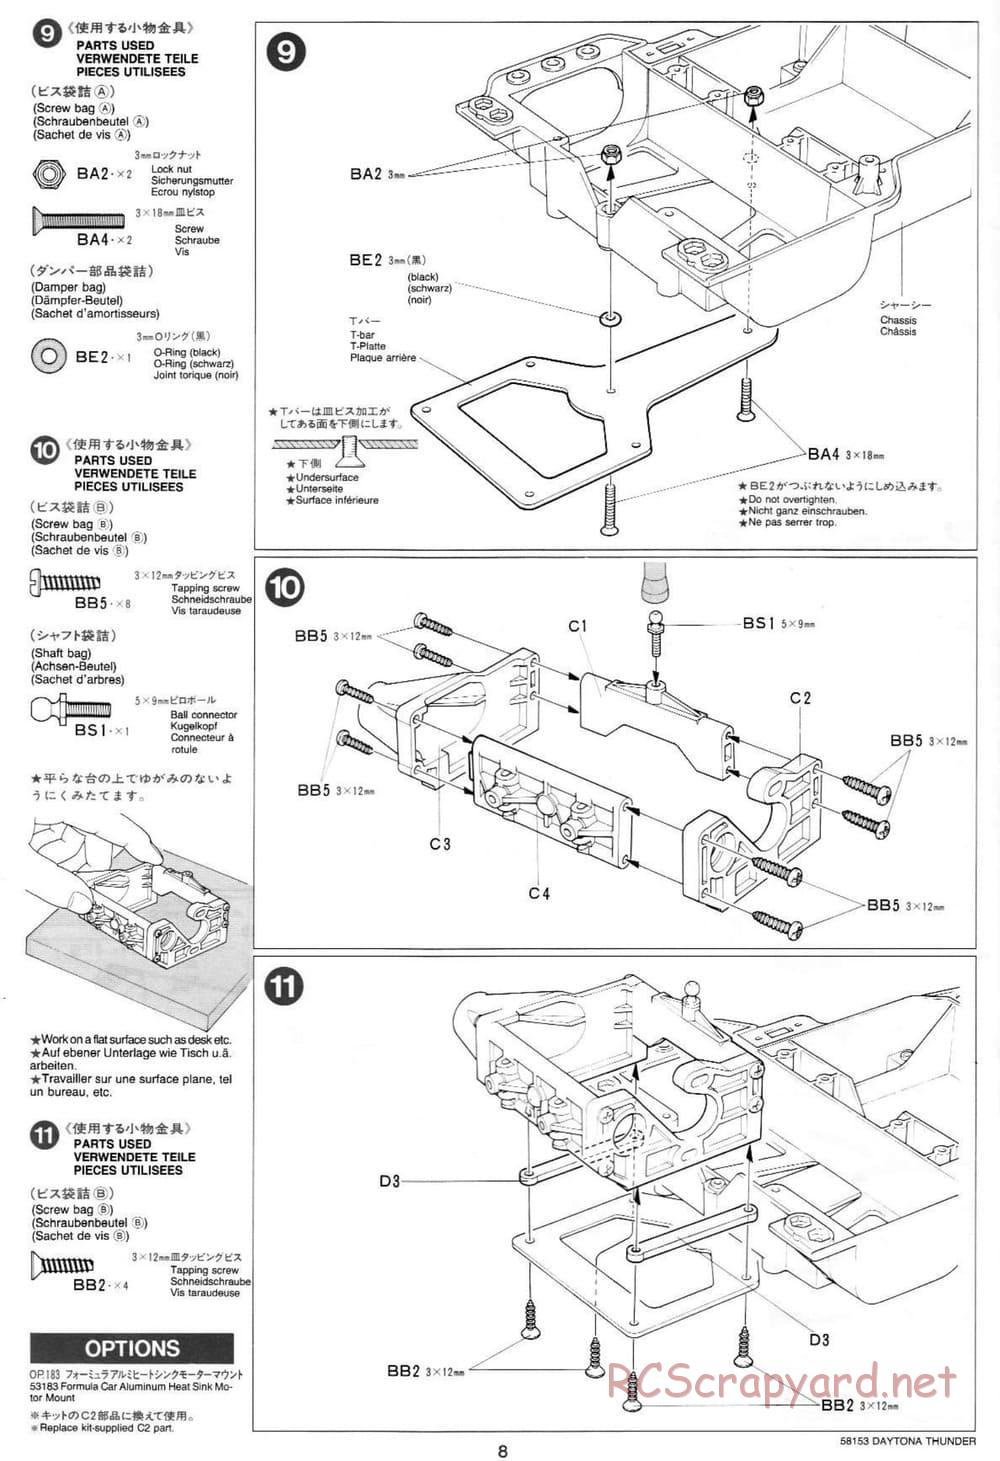 Tamiya - Daytona Thunder - Group-C Chassis - Manual - Page 8